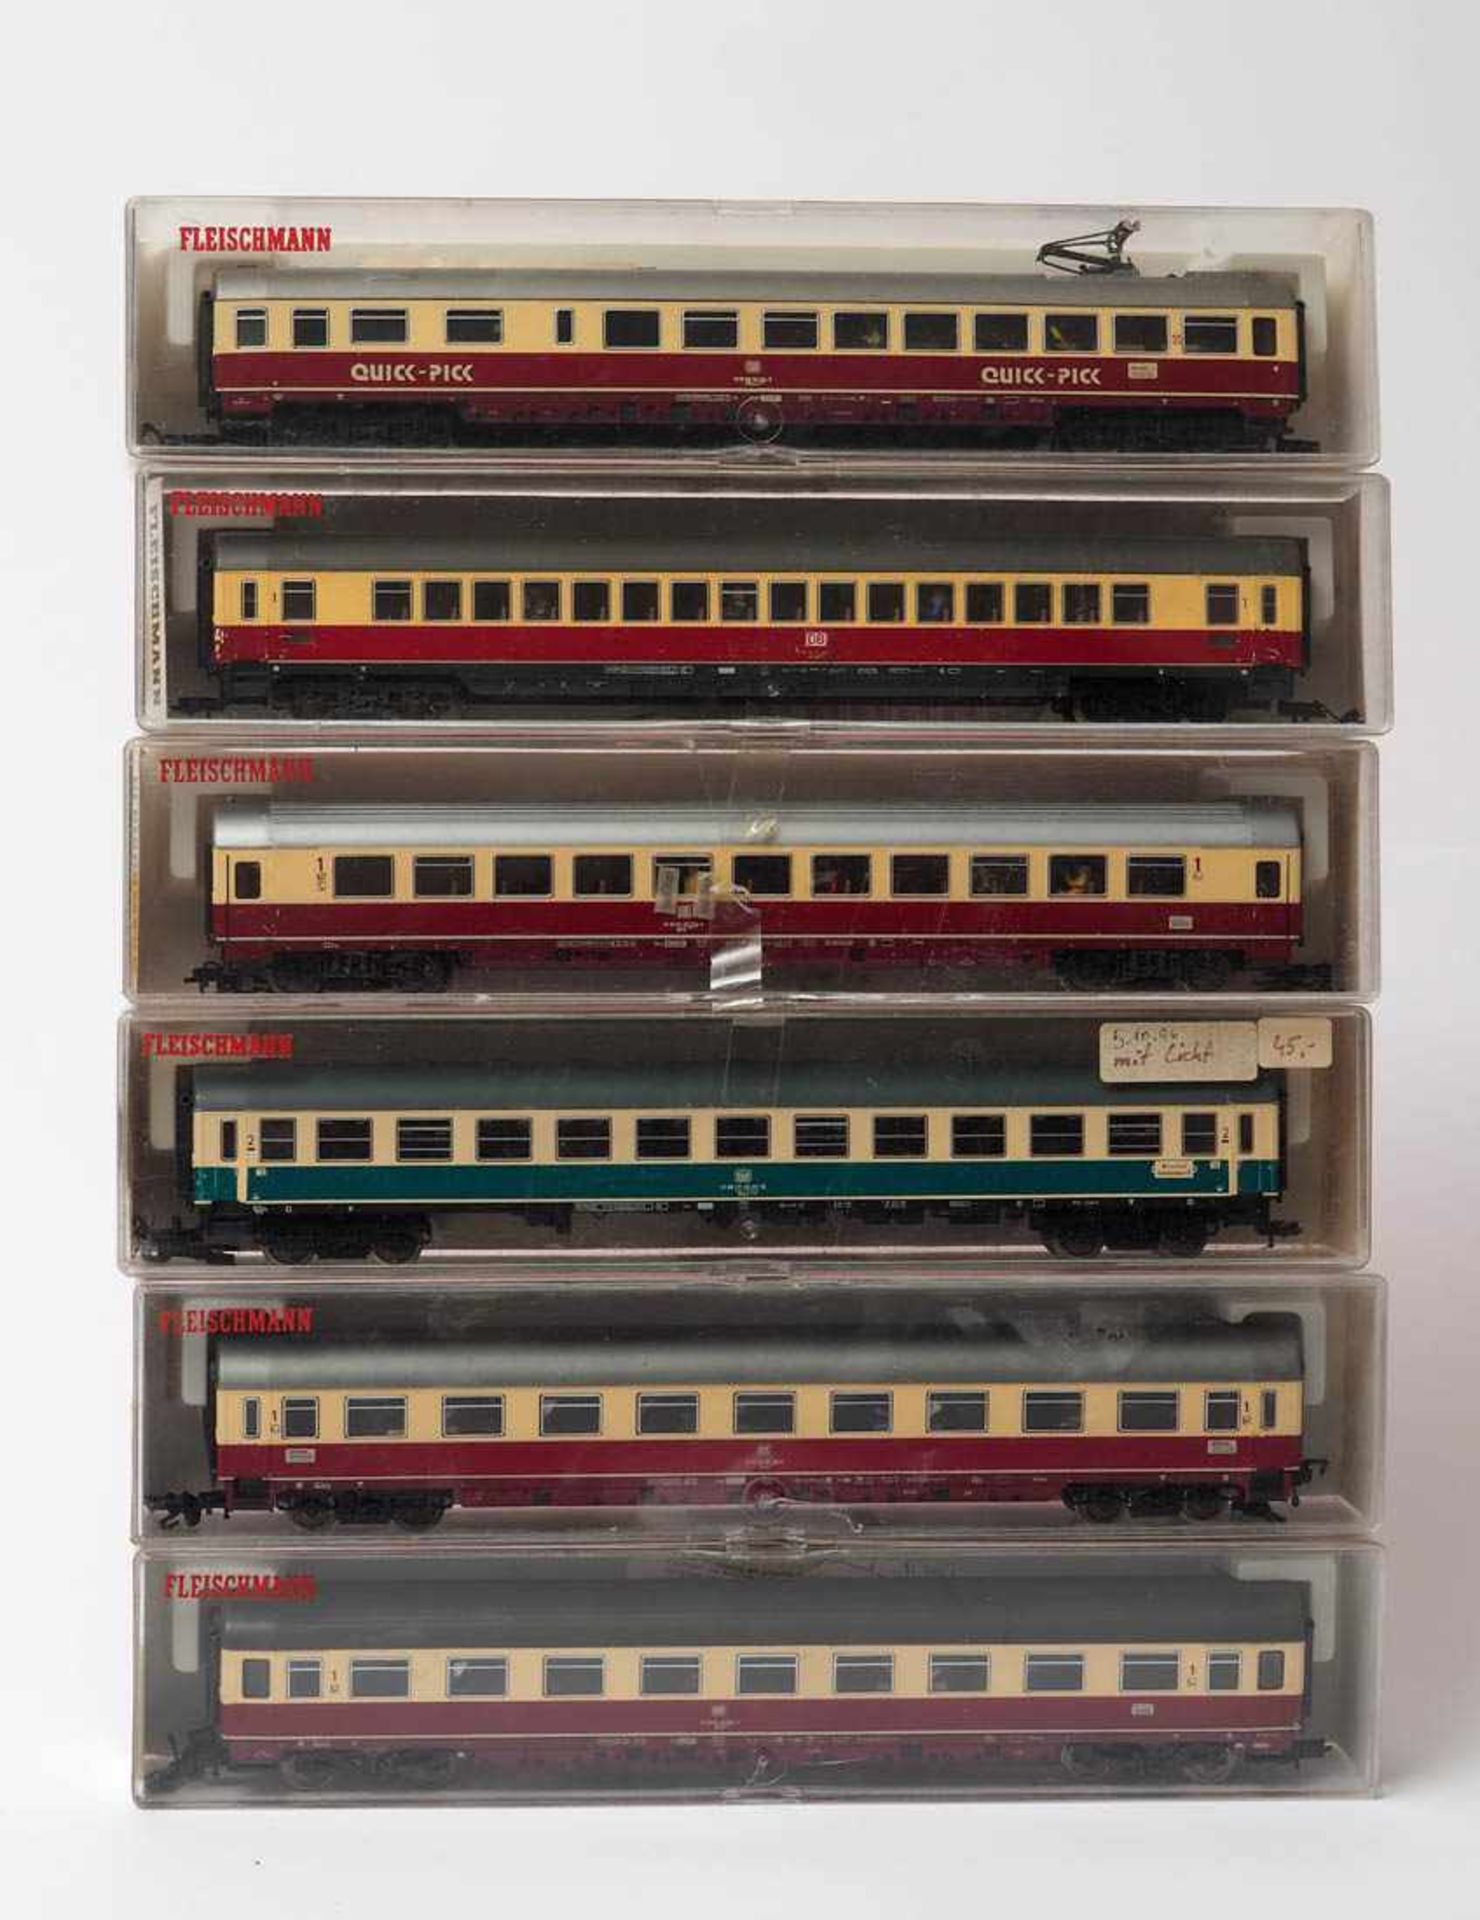 Sechs Schnellzugwagen, Fleischmann, Spur H0 Modellnummern 5192, 5164, 5169, 5163 und 5161. Dazu